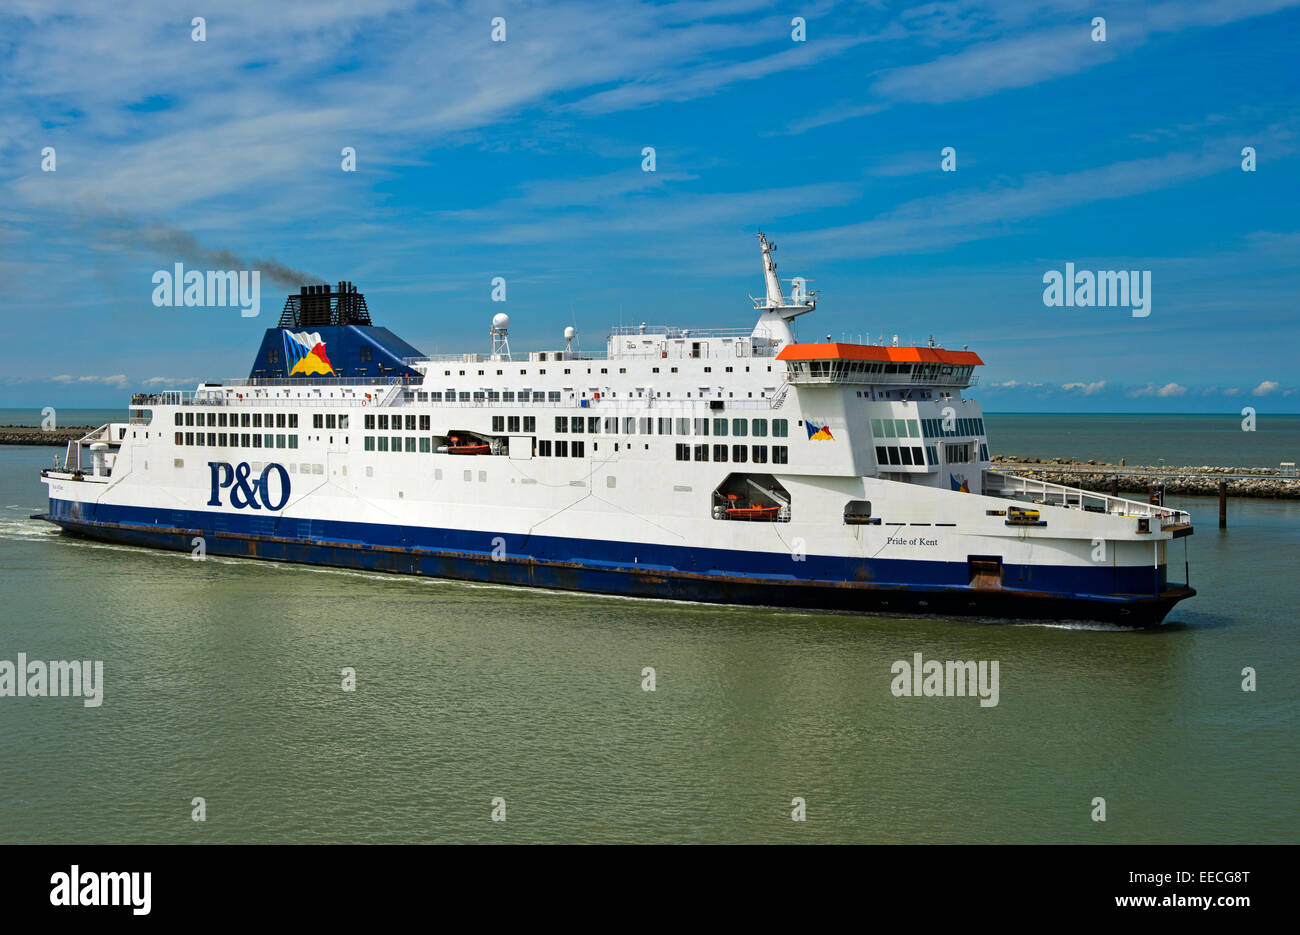 Ärmelkanal Pride of Kent von P&O Ferries nähert sich der Hafen von Calais, Frankreich Stockfoto